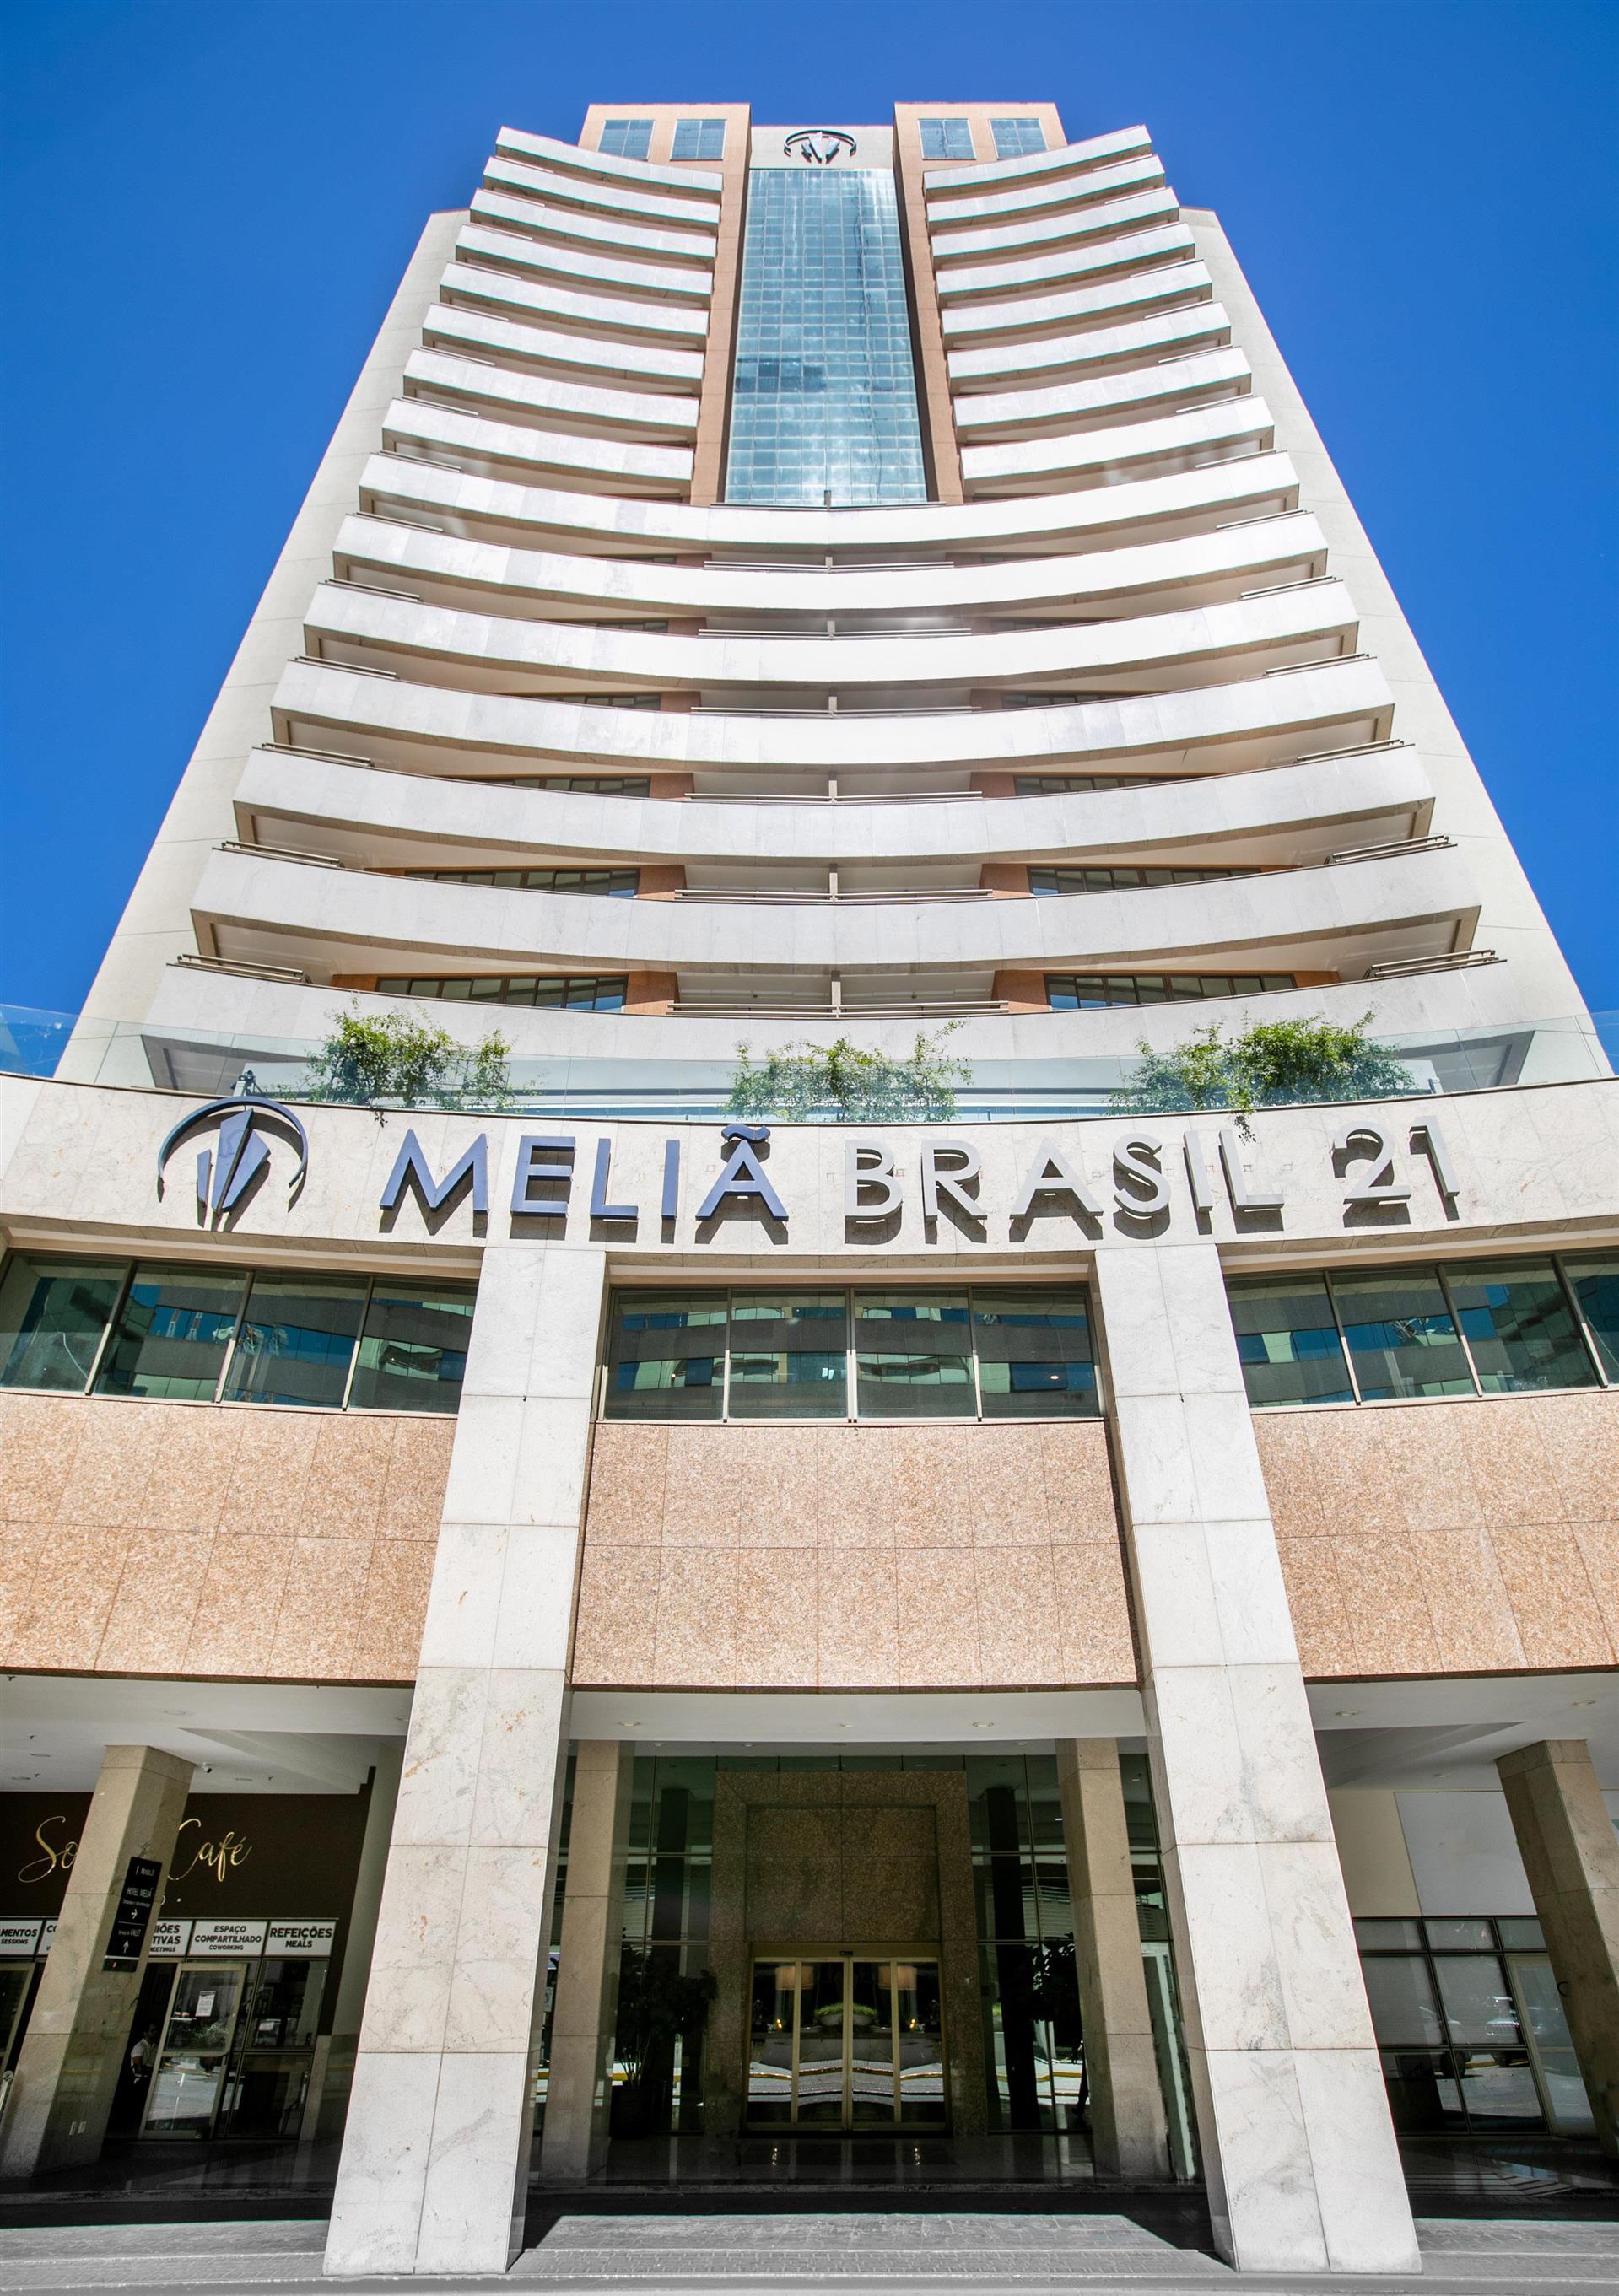 Melia Brasil 21 in Brasilia, BR